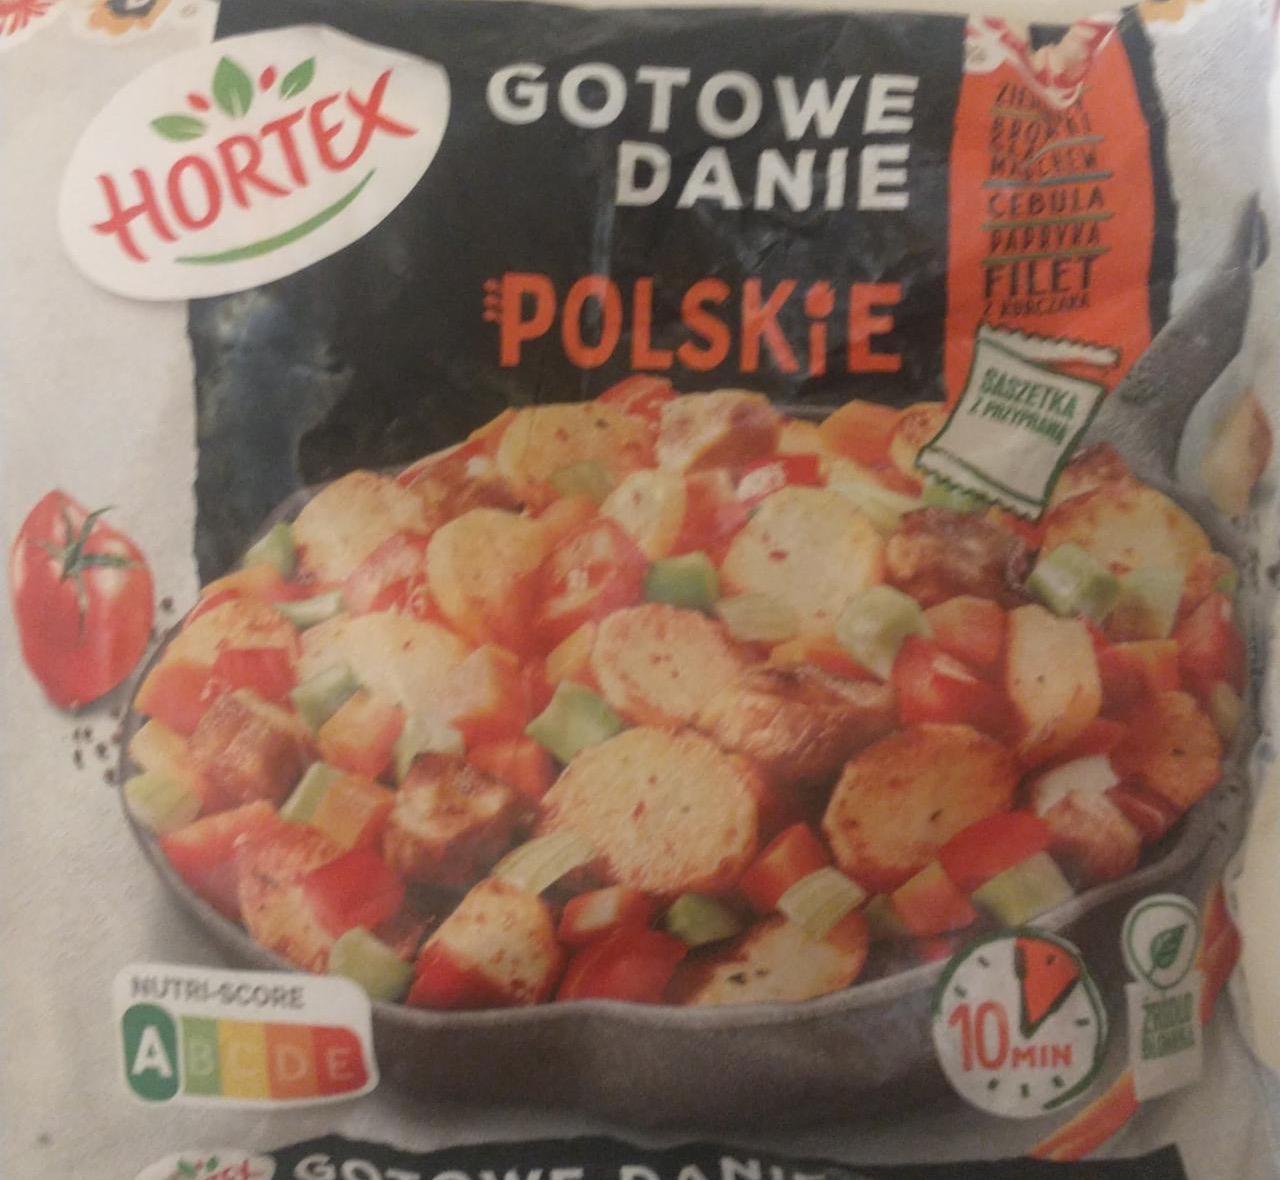 Zdjęcia - Gotowe danie Polskie Hortex